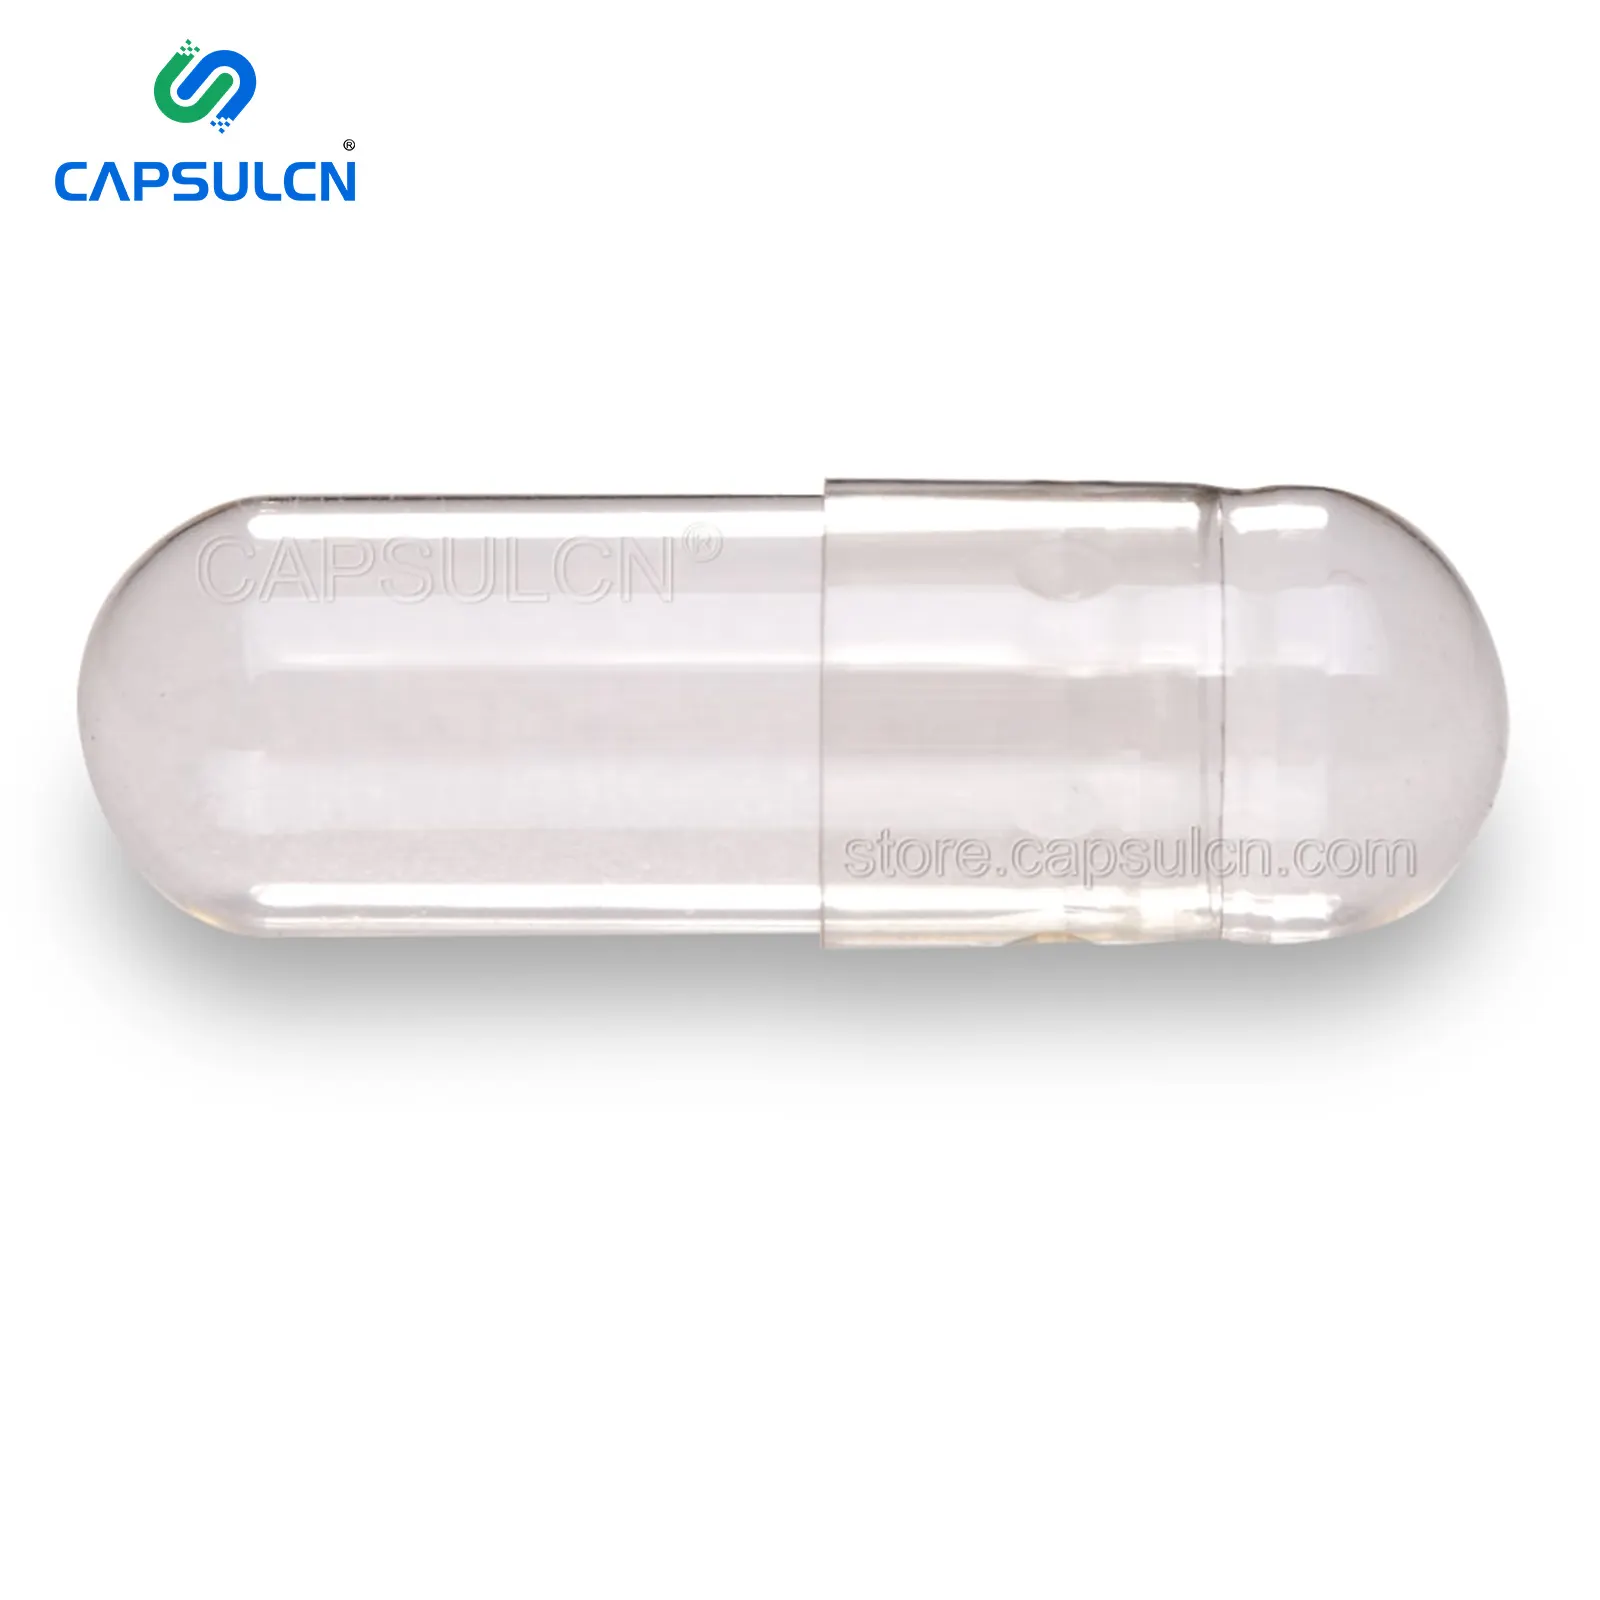 CapsulCN GMP معتمد 0 حجم الخضروات فصل واضح كبسولات HPMC فارغة غطاء الكبسولات الخضار شفافة كبسولة